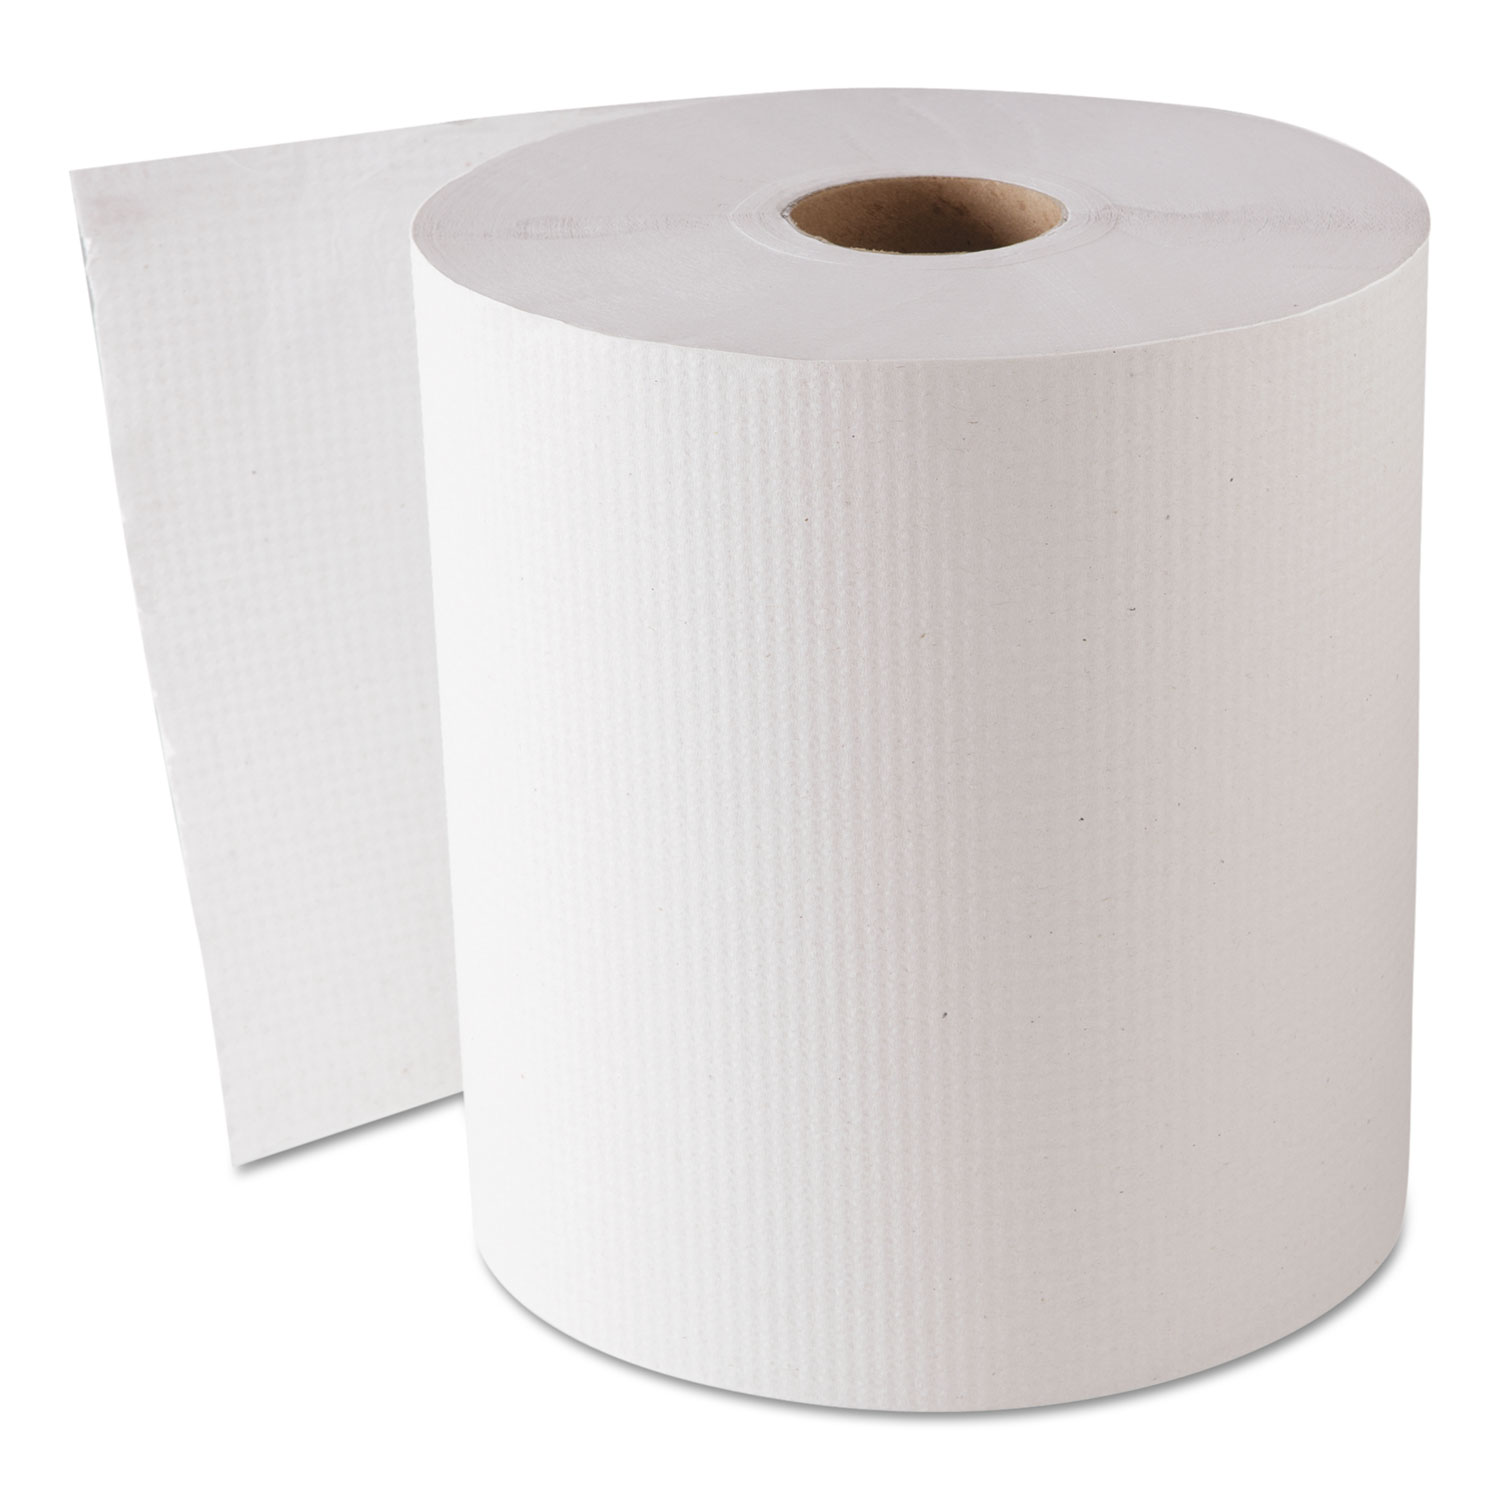  GEN GEN1820 Hardwound Roll Towels, White, 8 x 800 ft, 6 Rolls/Carton (GEN1820) 